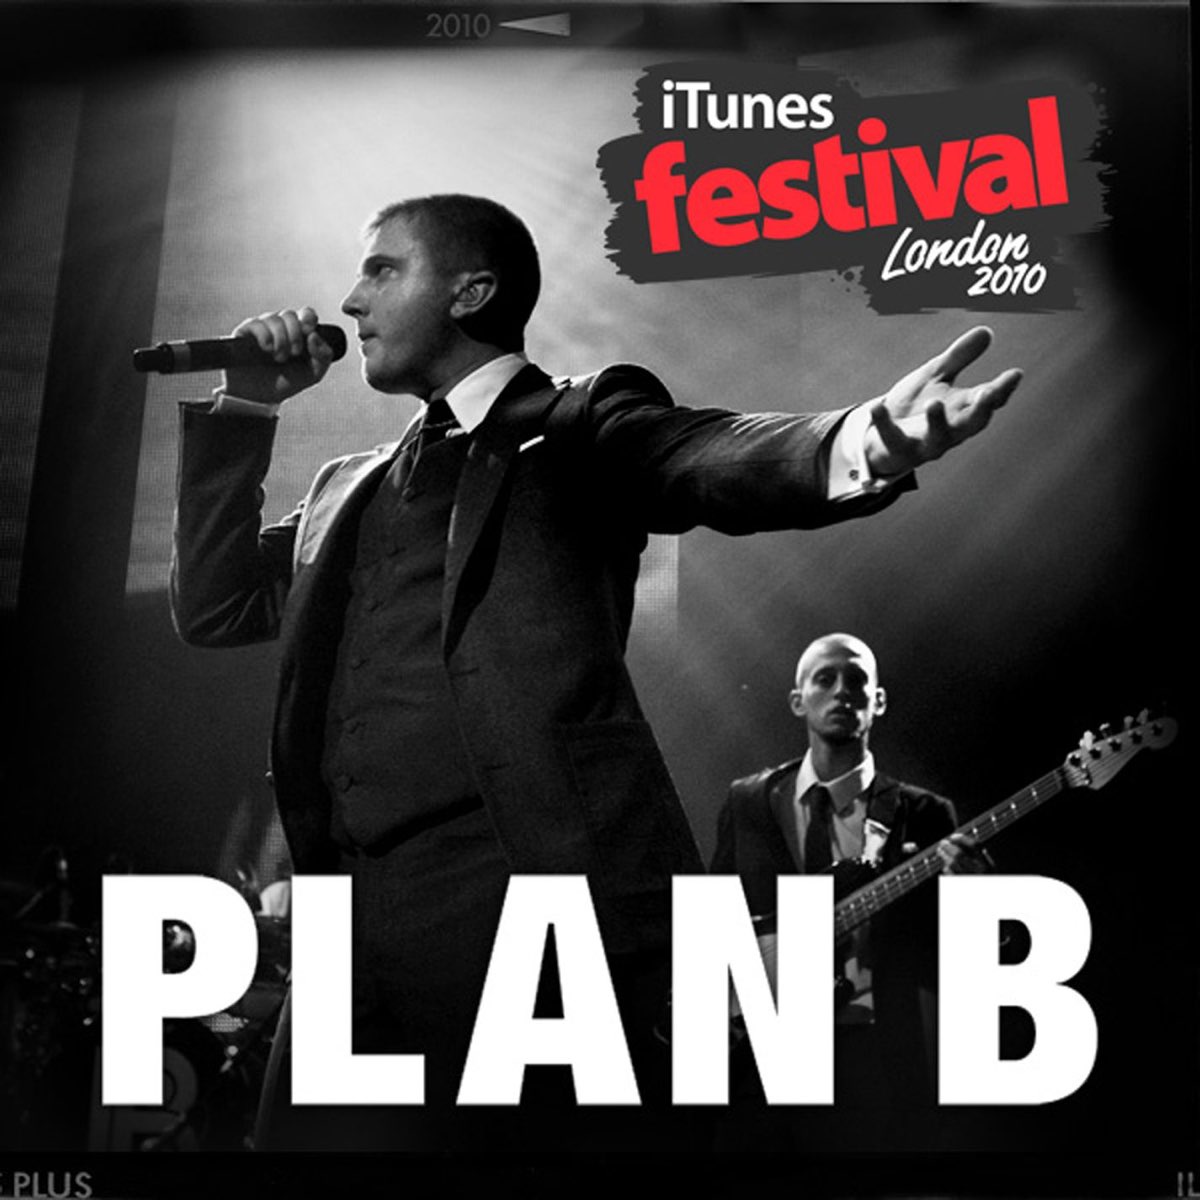 Plan b stay too. Plan b stay too long. Plan b she said.